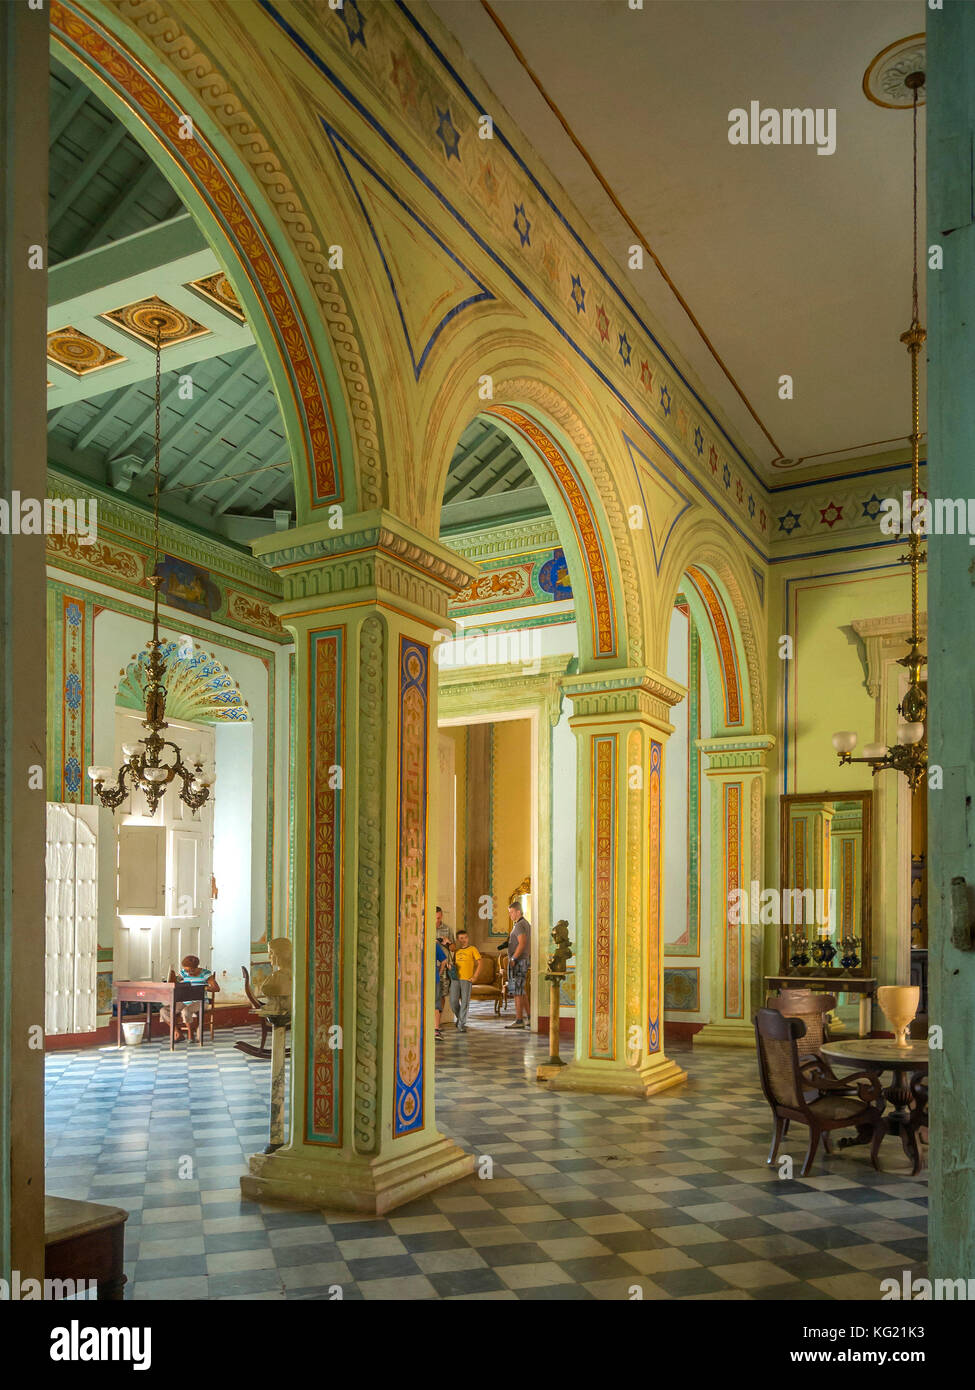 Trinidad, Cuba :  Museo de Historia de Trinidad - Palacio Cantero Stock Photo